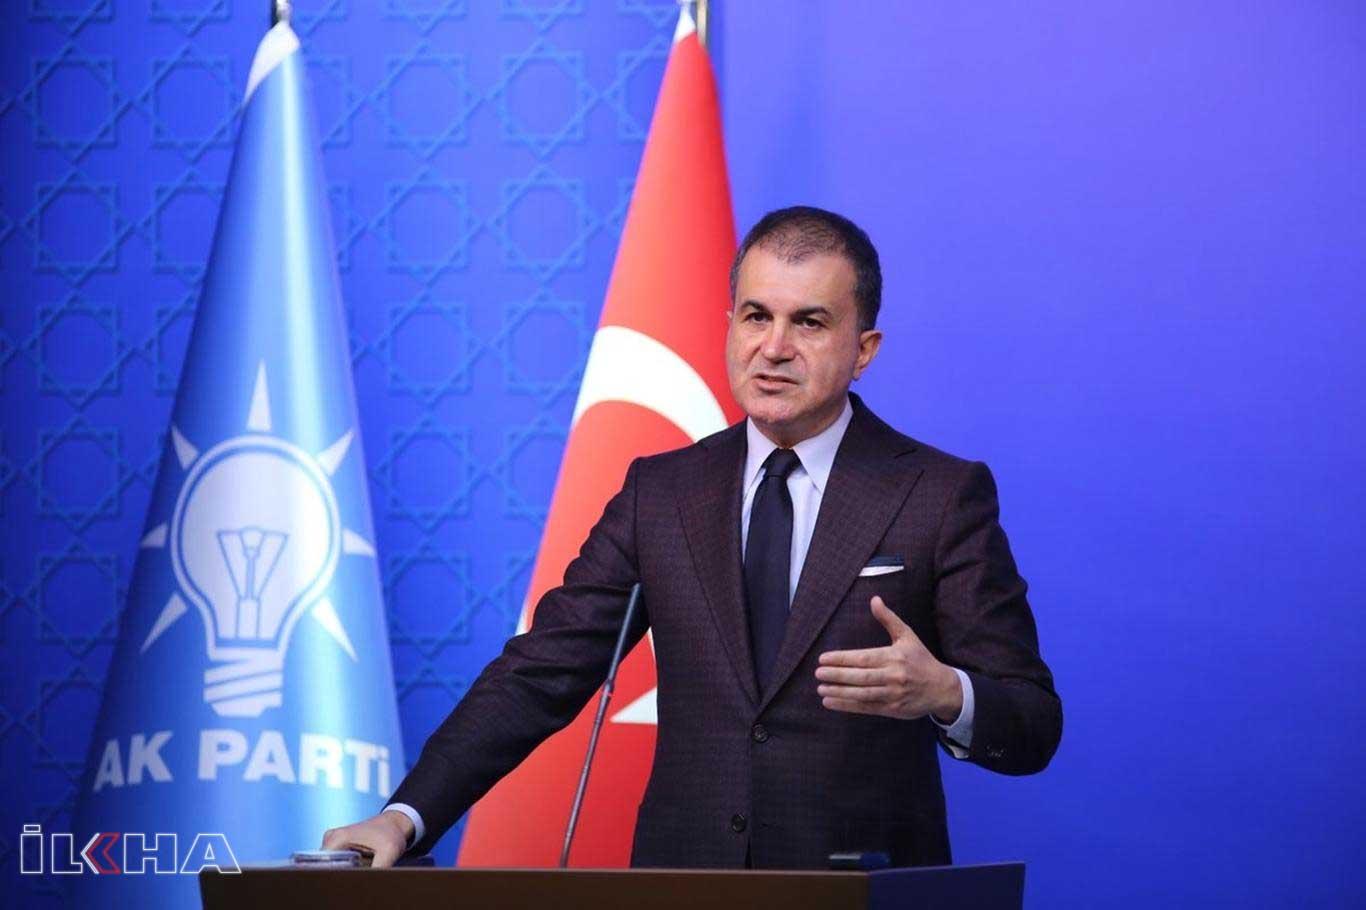 AK Parti Sözcüsü Çelik: "Barış planı ölü doğmuştur"